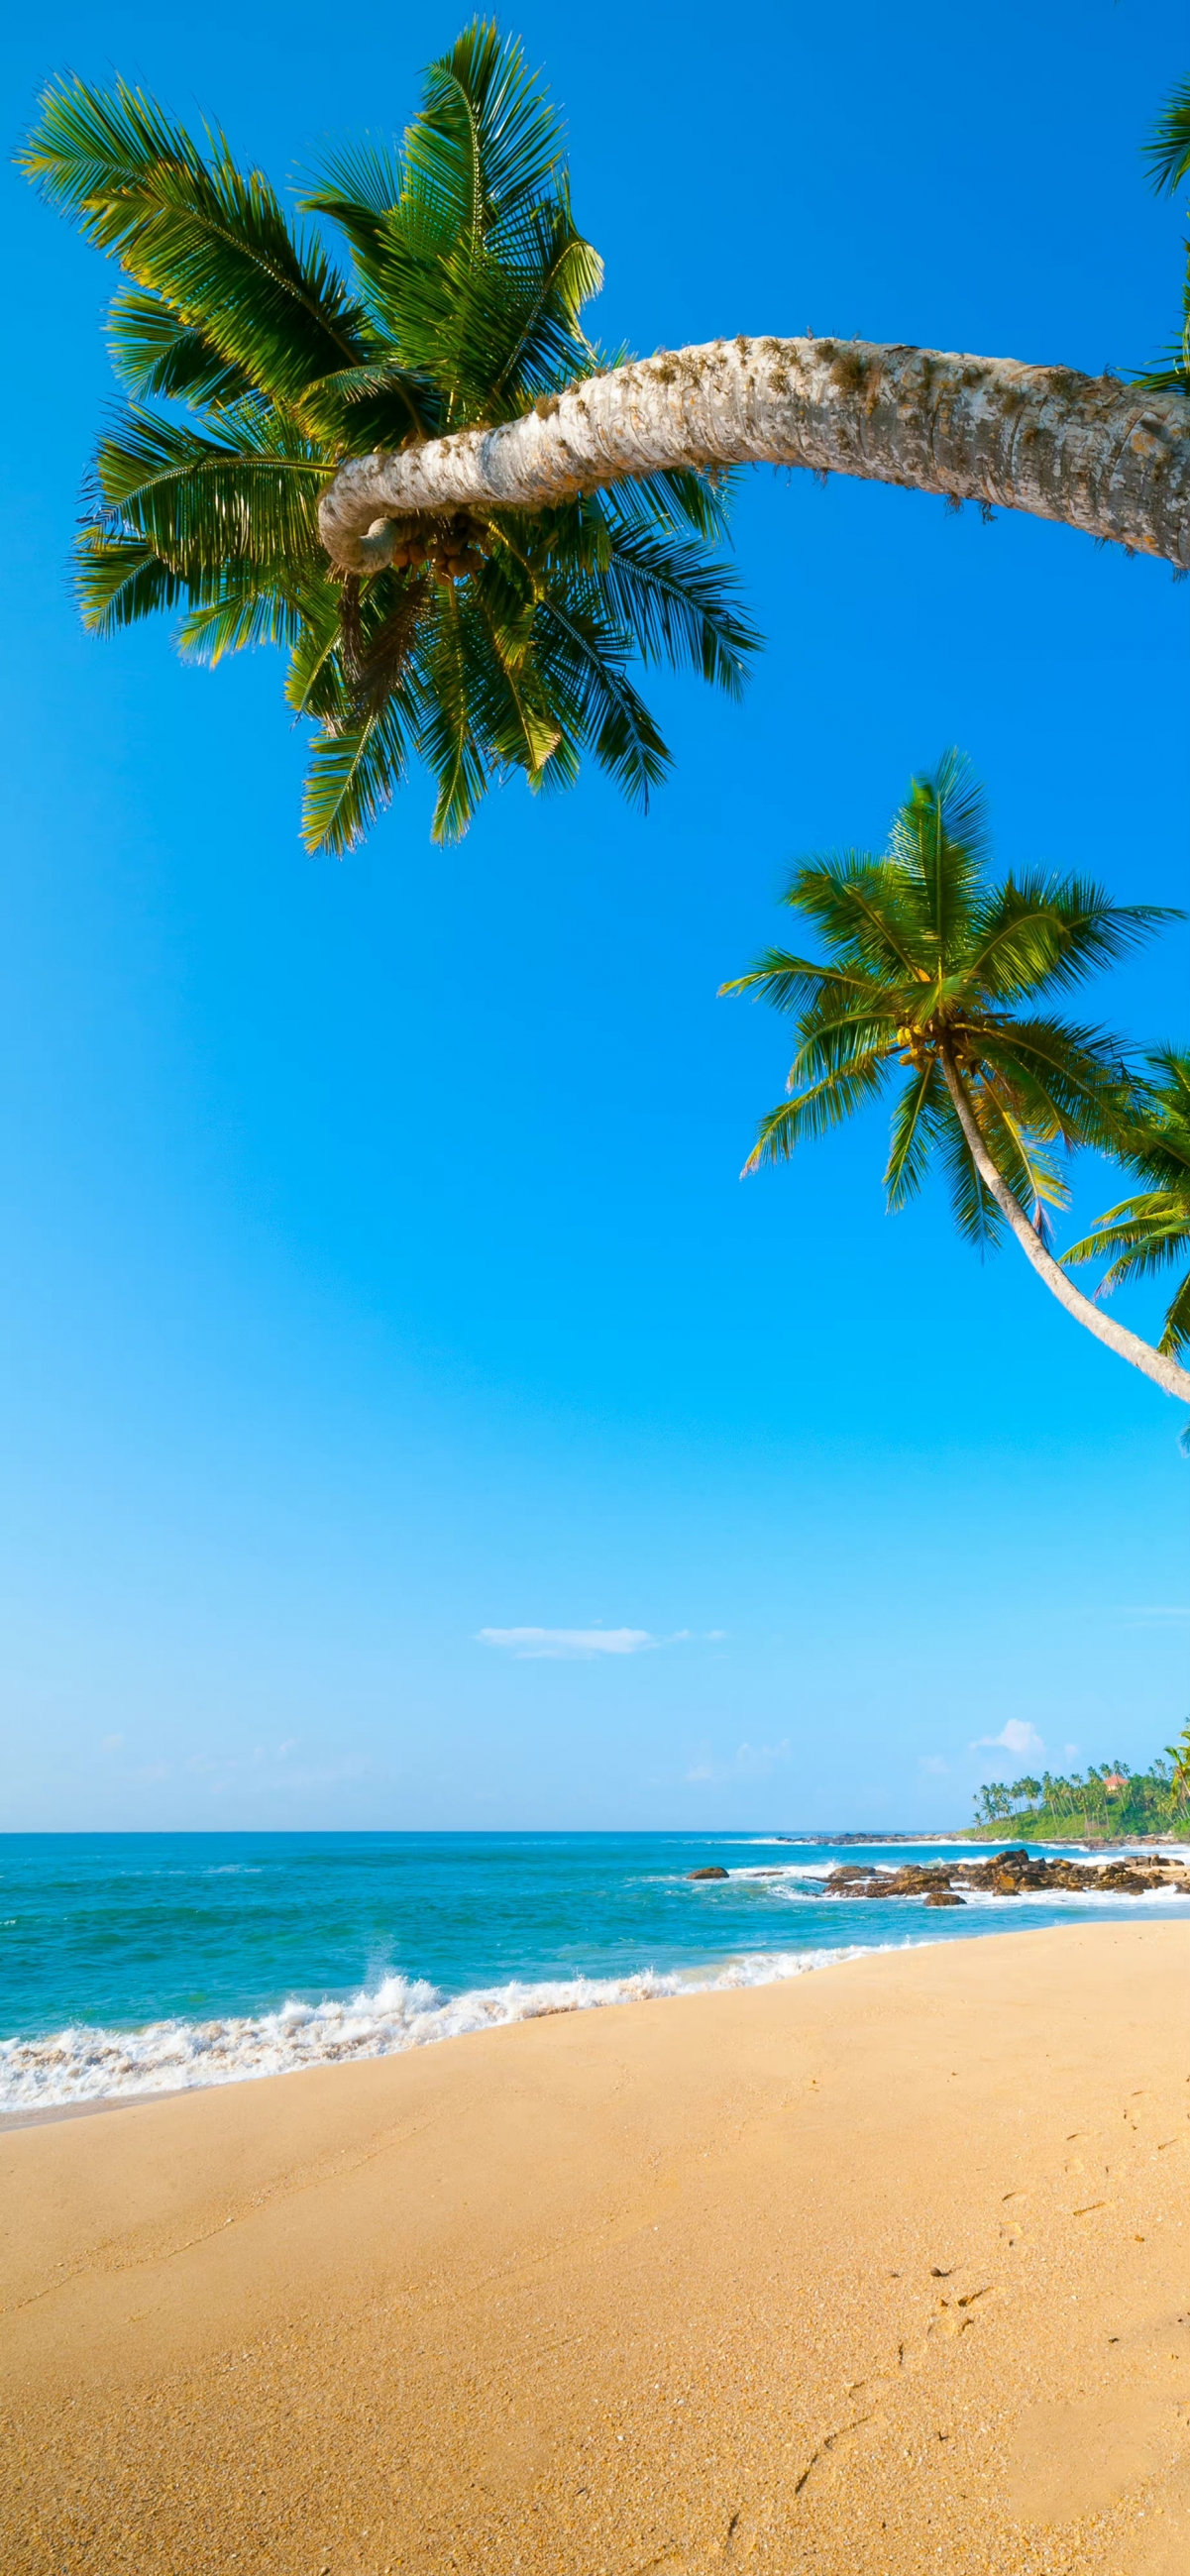 大海 沙滩 椰树 高清 4k 全屏风景手机壁纸